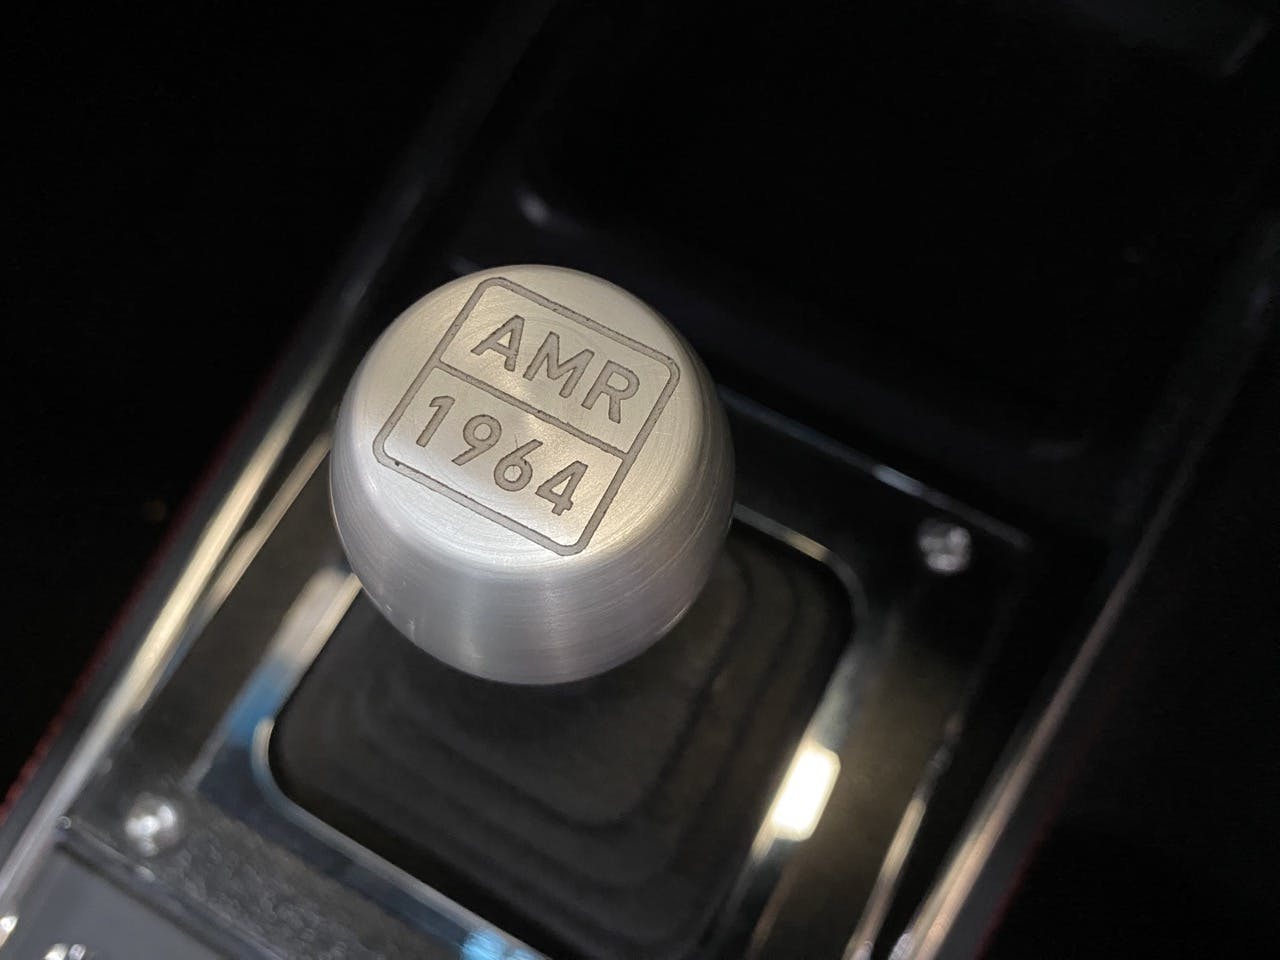 Alan Mann Mustang AMR7 interior shifter